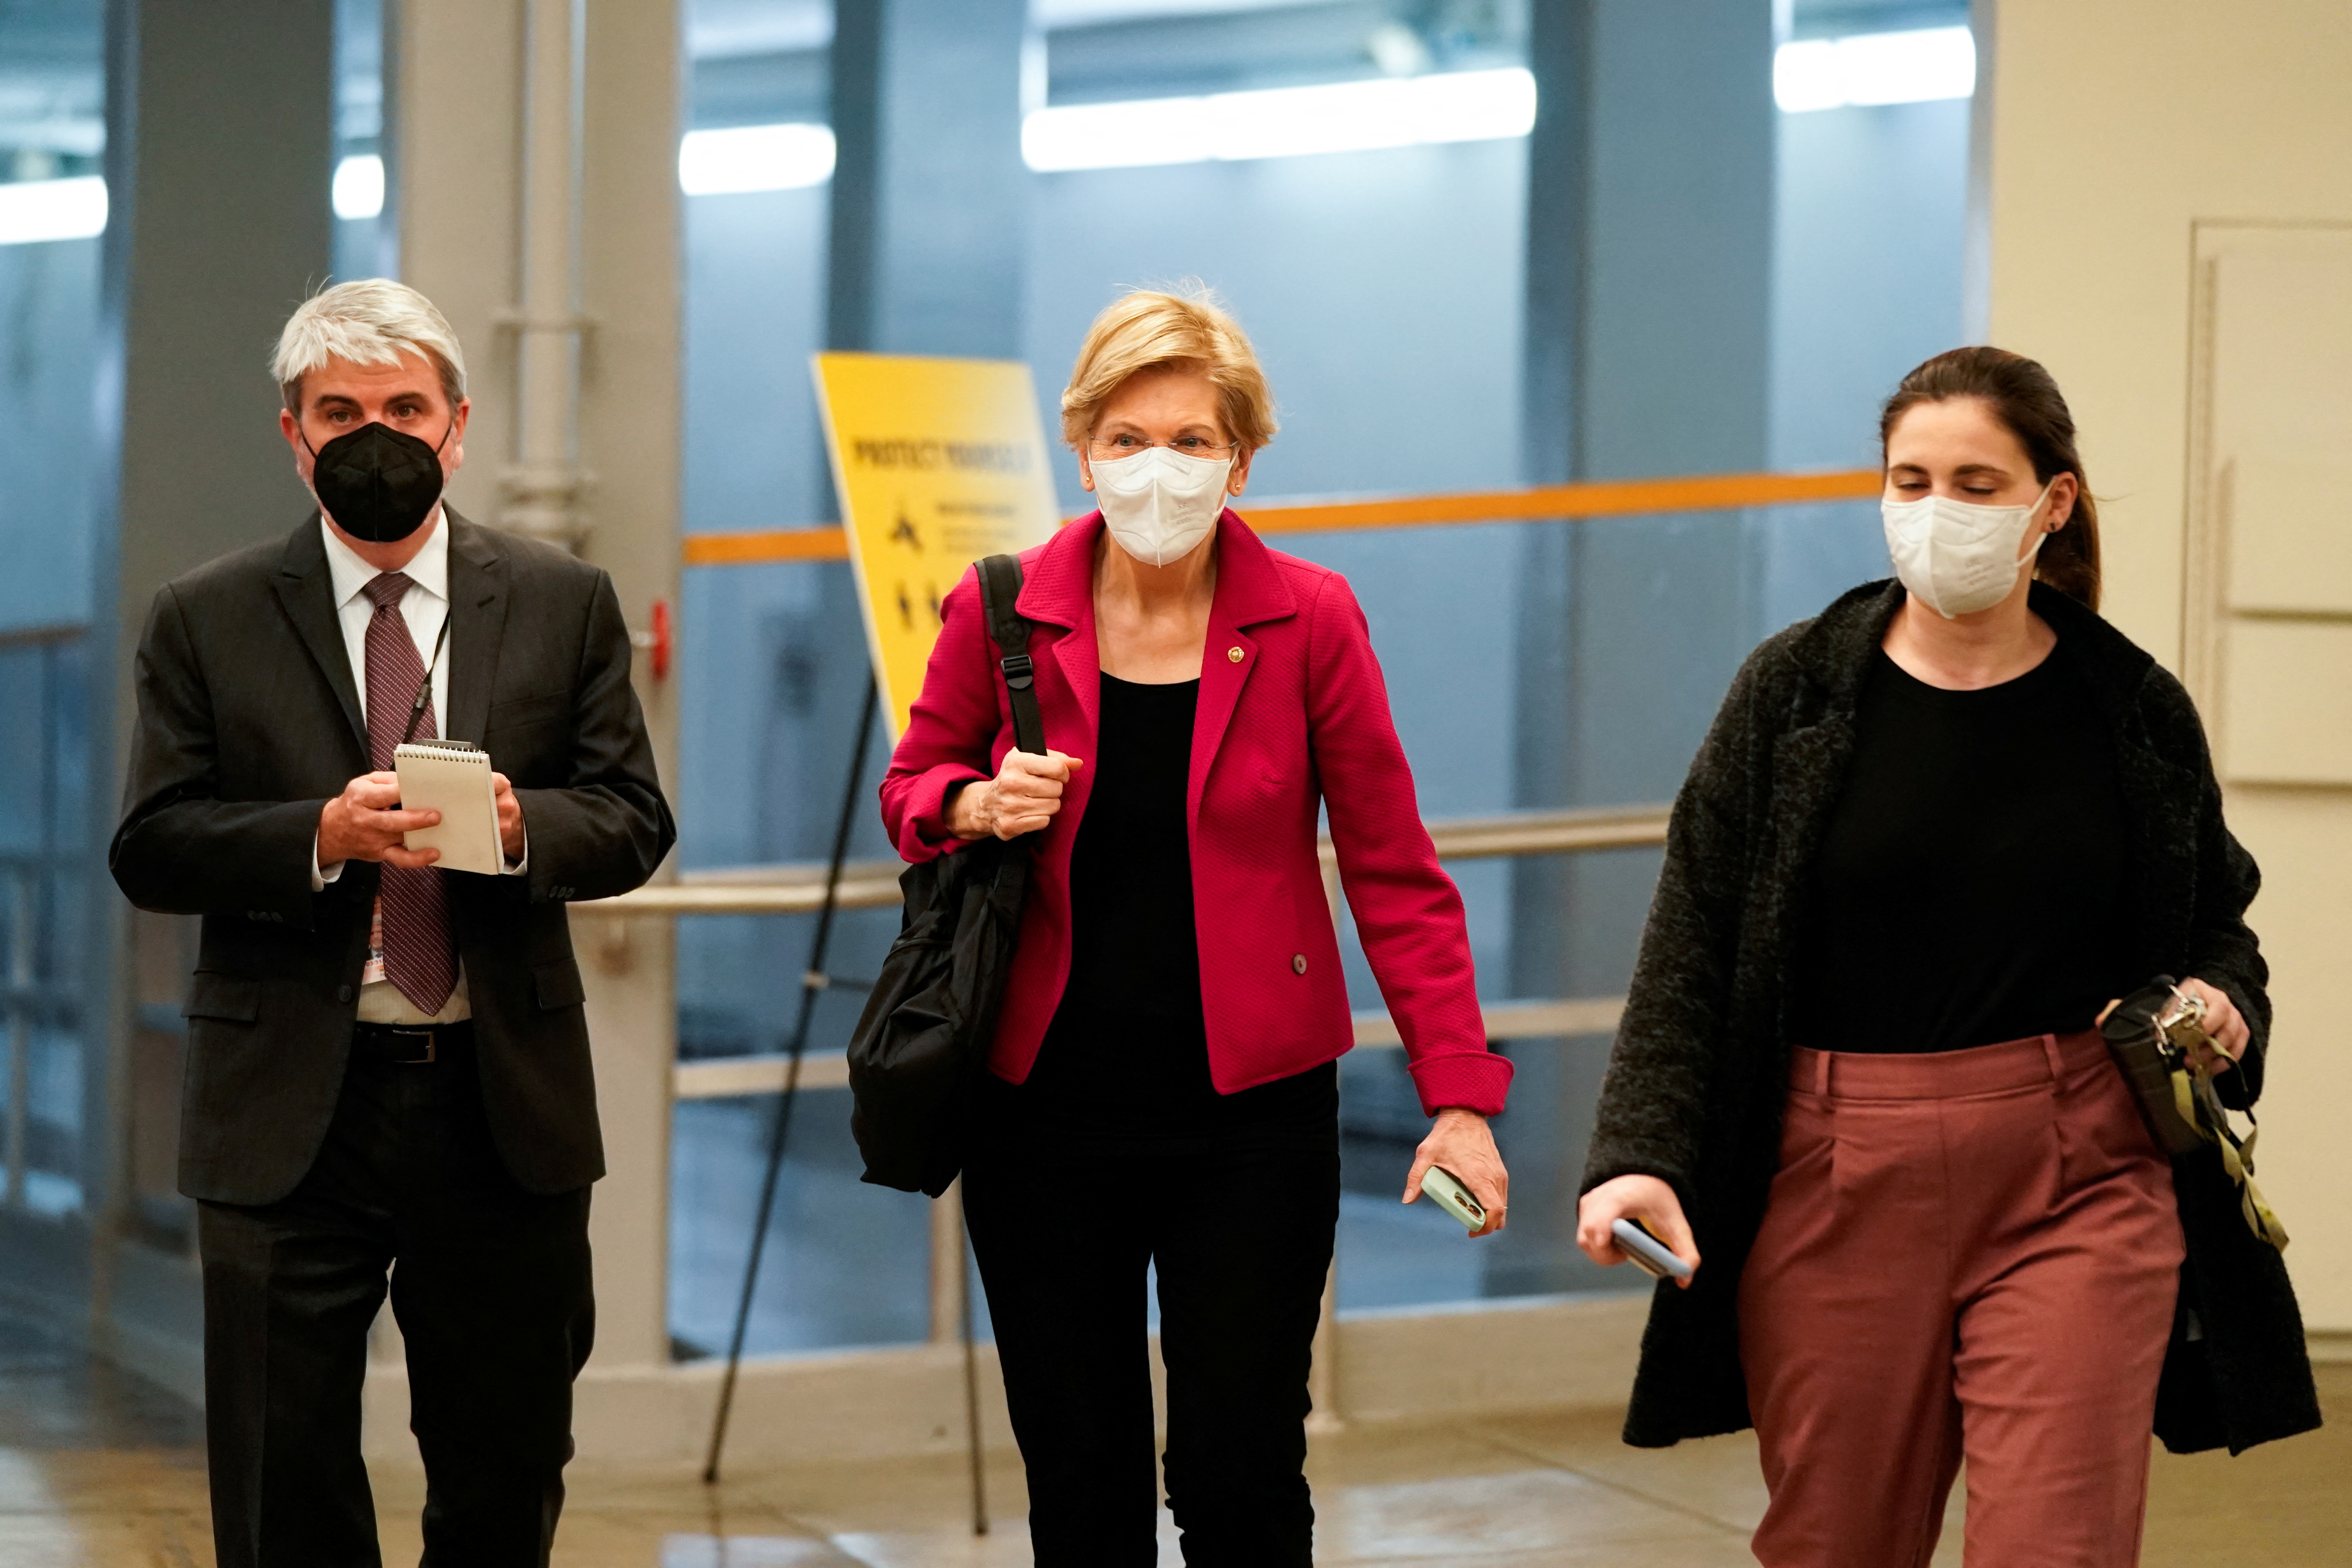 U.S. Senator Elizabeth Warren (D-MA) walks through the Senate Subway at the U.S. Capitol in Washington